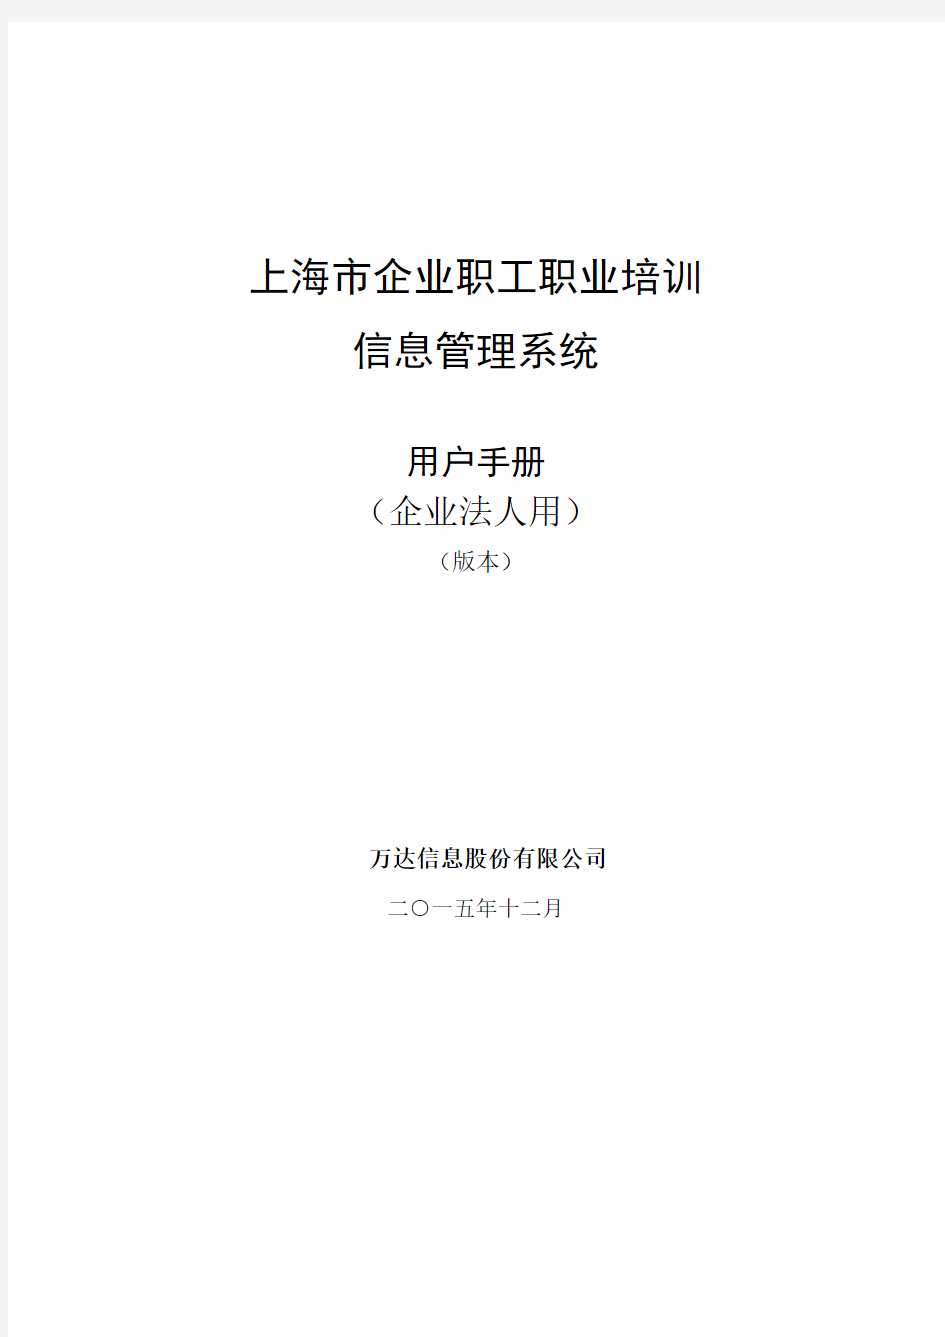 上海市企业职工职业培训信息管理系统操作手册